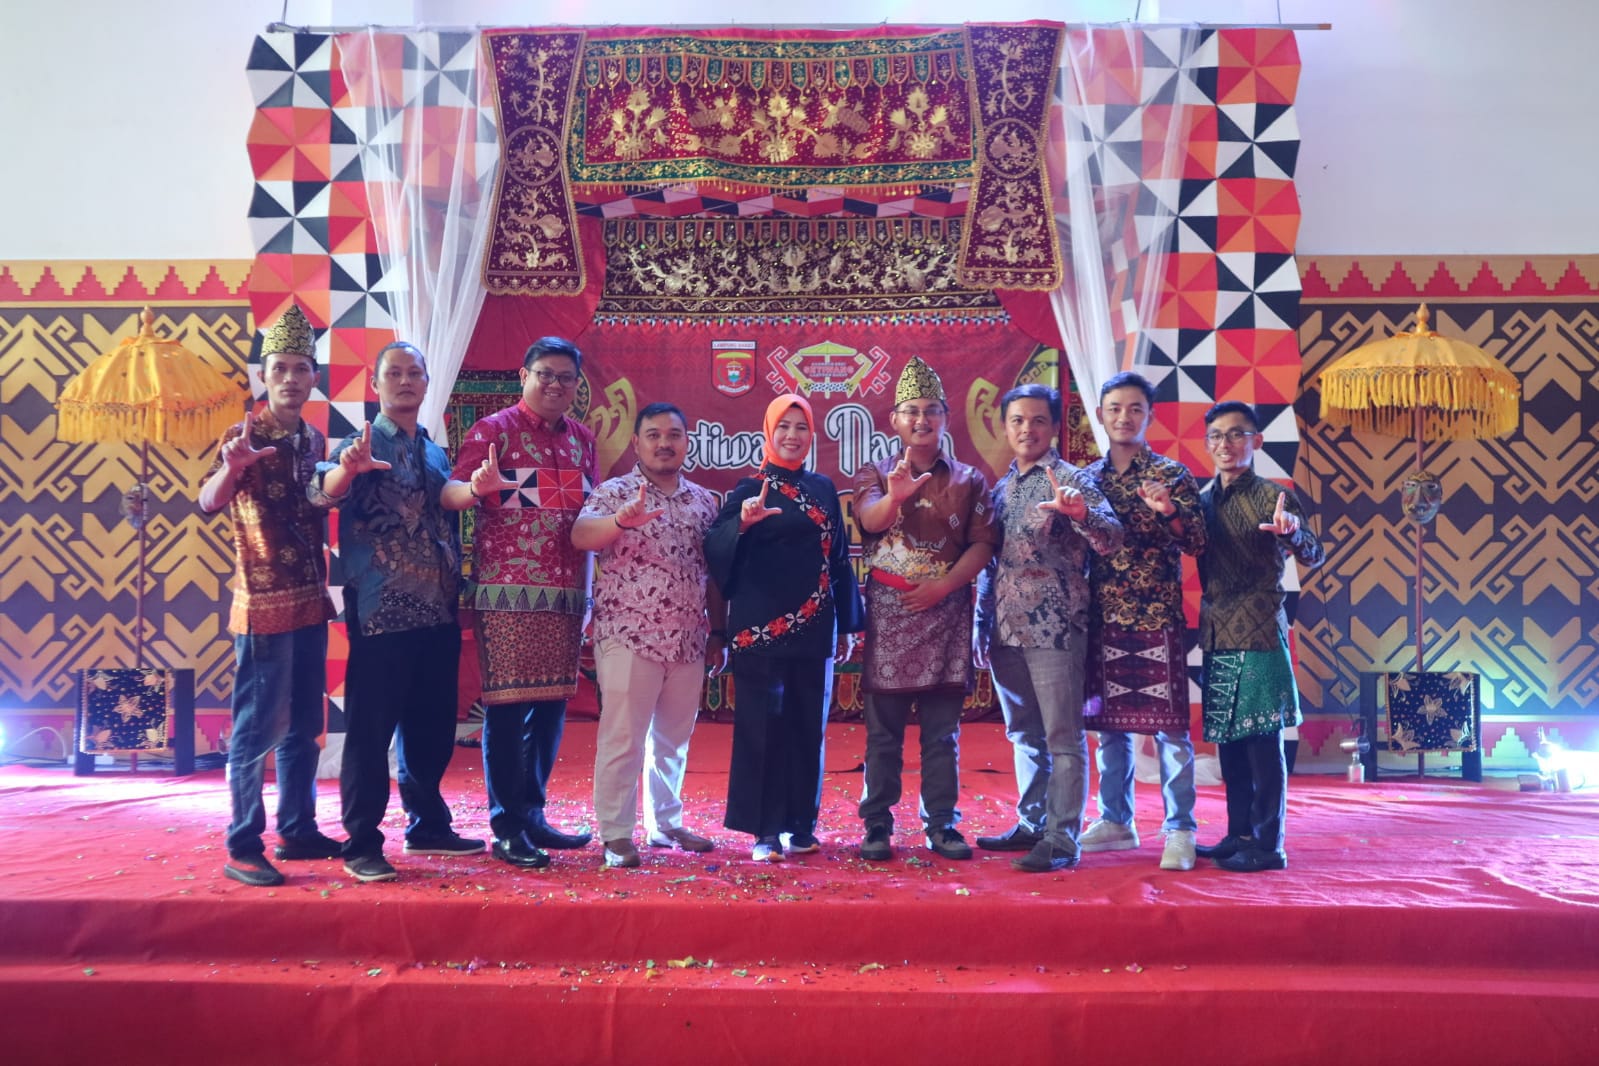 Membanggakan, Sanggar Seni Setiwang Jadi Contoh Sanggar di Lampung Barat 